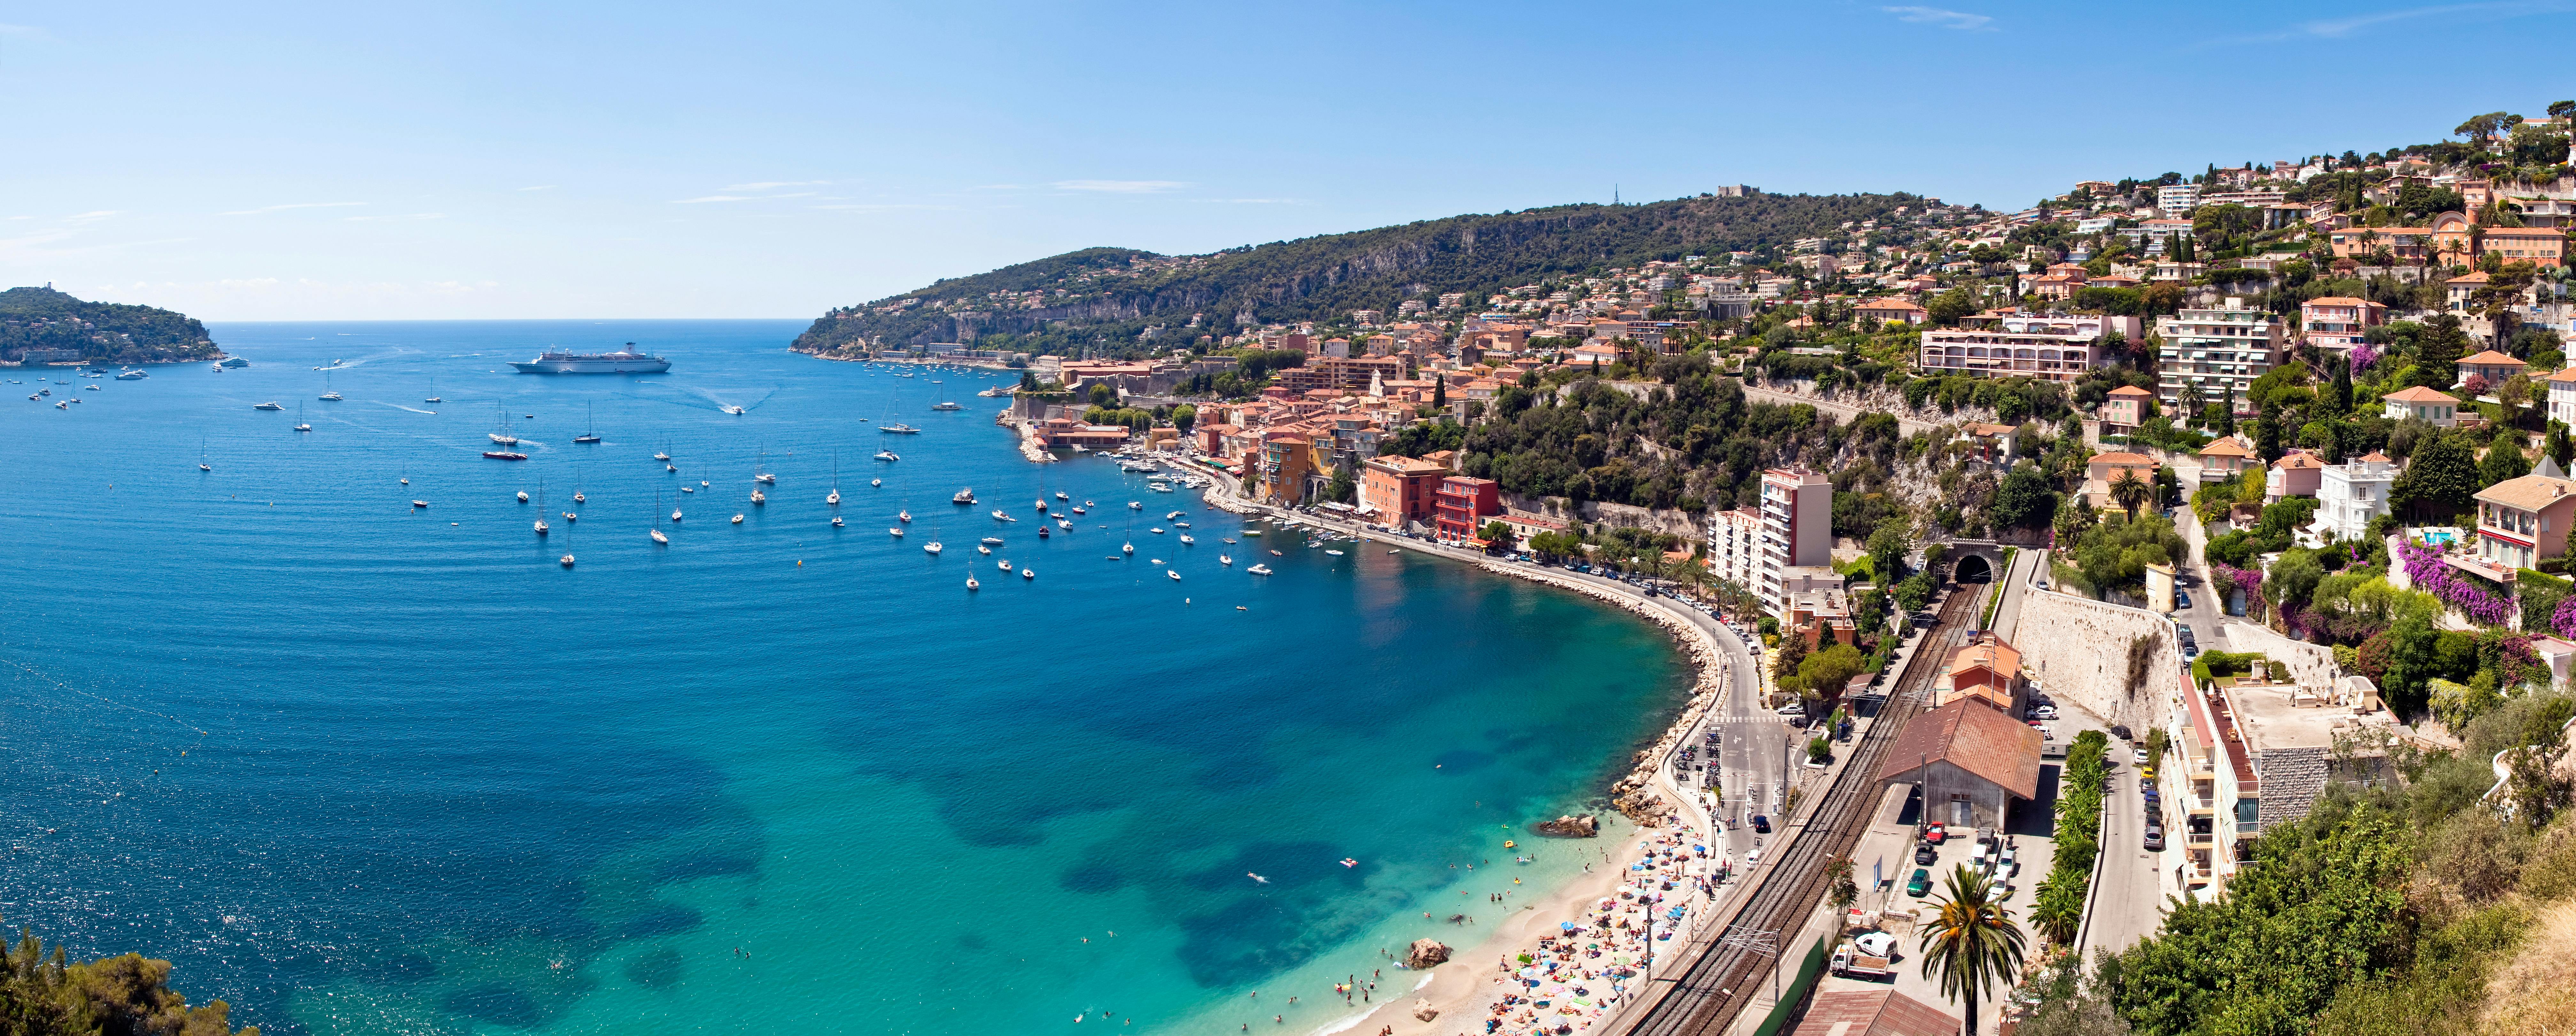 Viaggio privato a Cannes e Antibes dai porti di Nizza o Villefranche